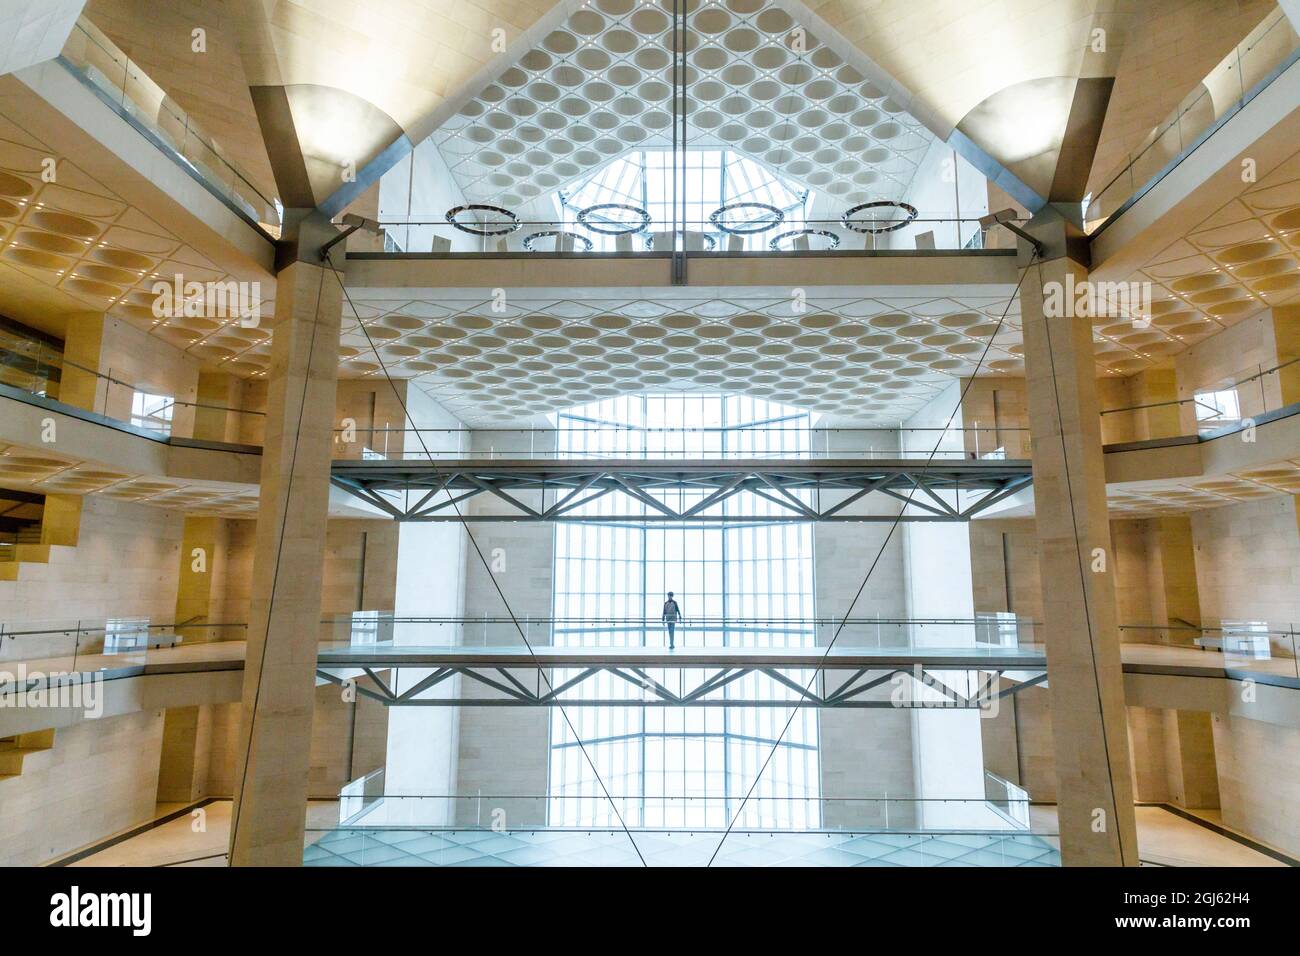 Stato del Qatar, Doha. Interno del Museo di Arte Islamica, costruito nel 2008. Finestre affacciate sul lato anteriore dal pavimento al soffitto. (Solo per uso editoriale) Foto Stock